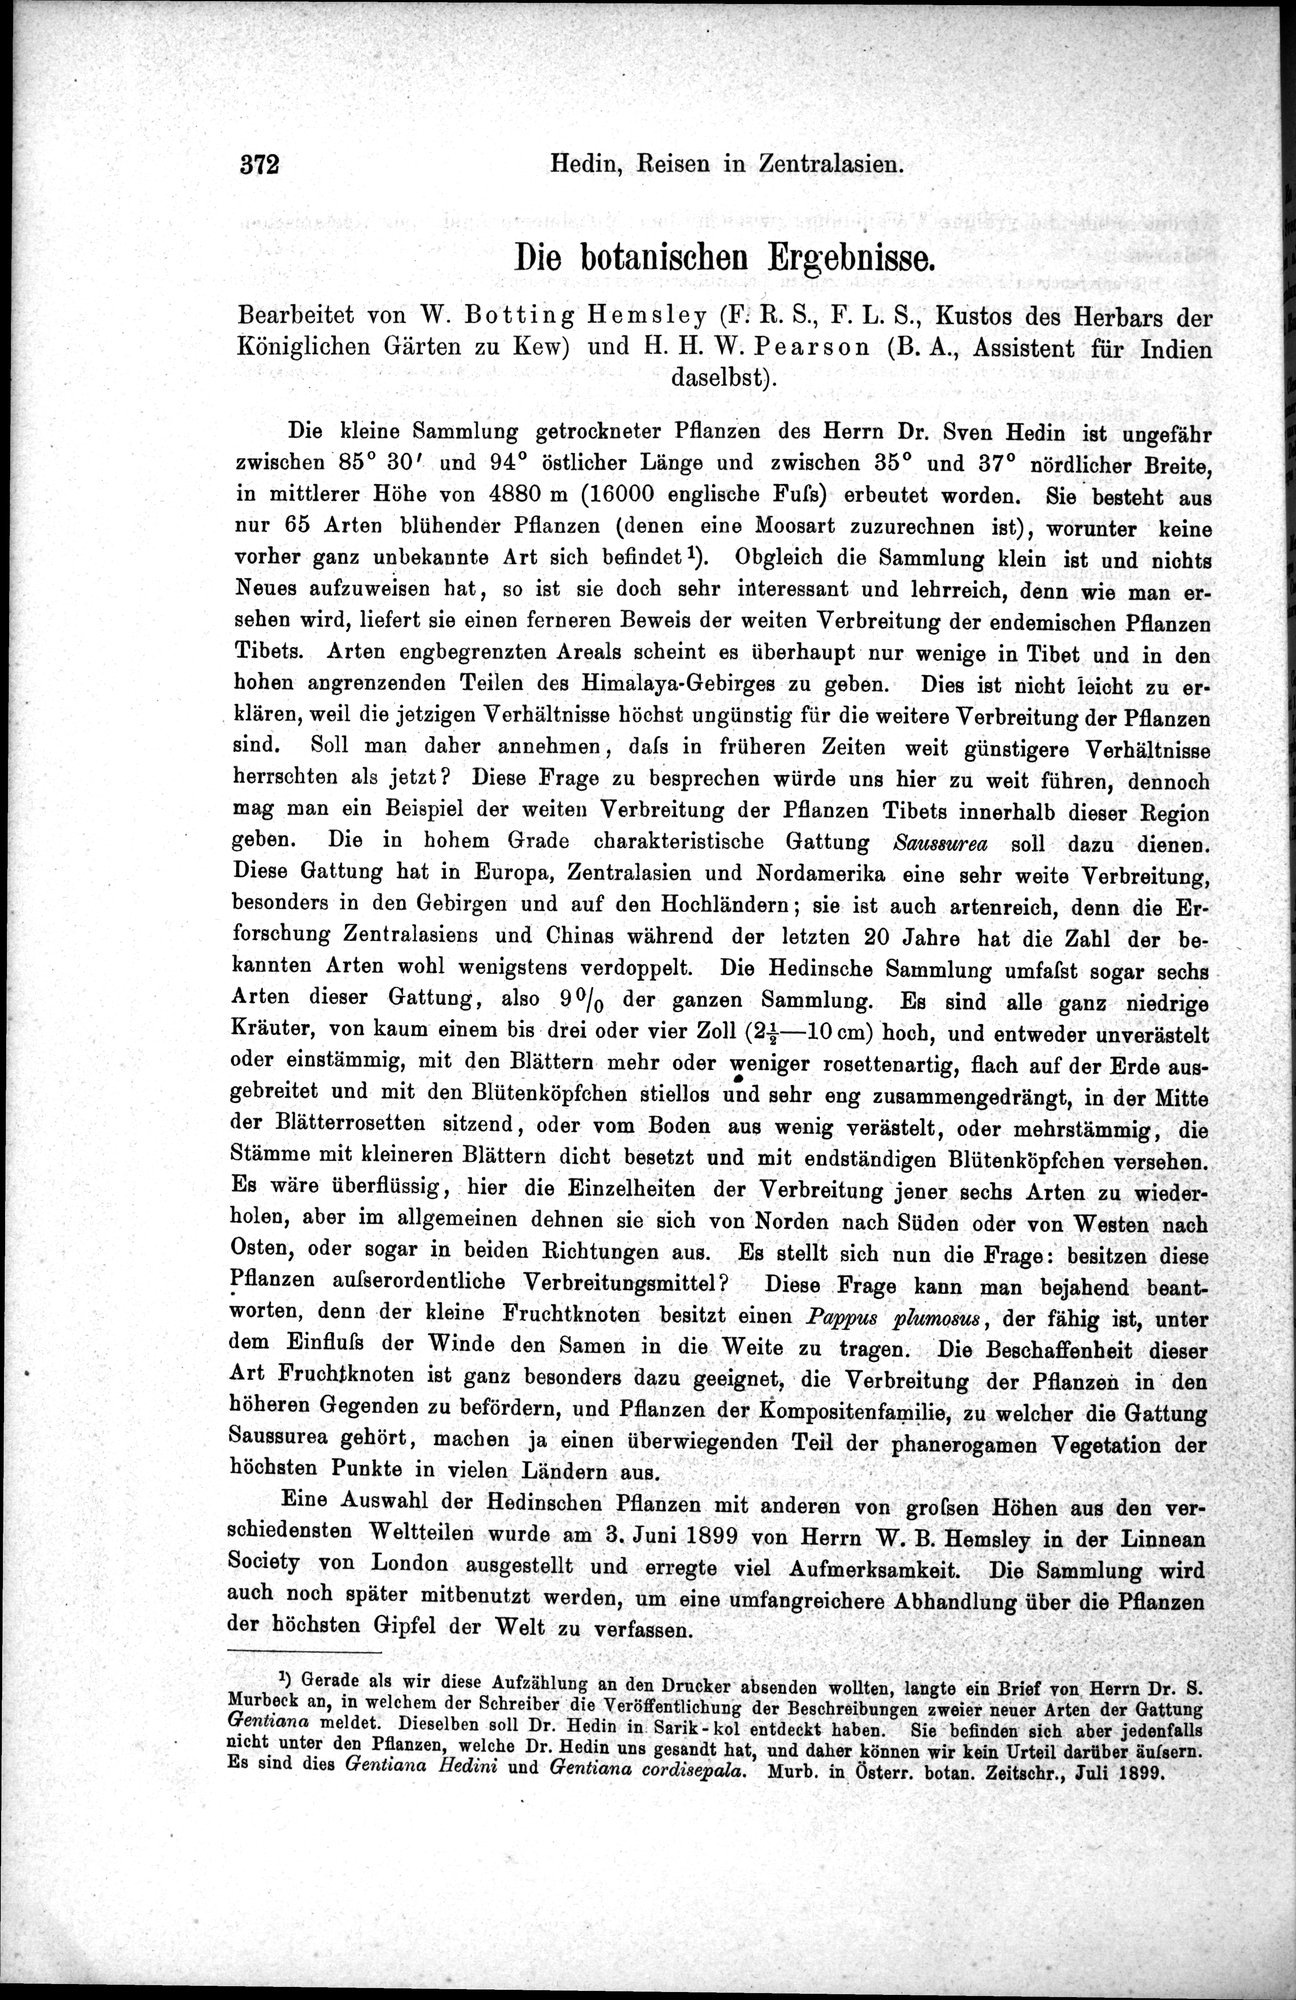 Die Geographische-Wissenschaftlichen Ergebnisse meiner Reisen in Zentralasien, 1894-1897 : vol.1 / Page 384 (Grayscale High Resolution Image)